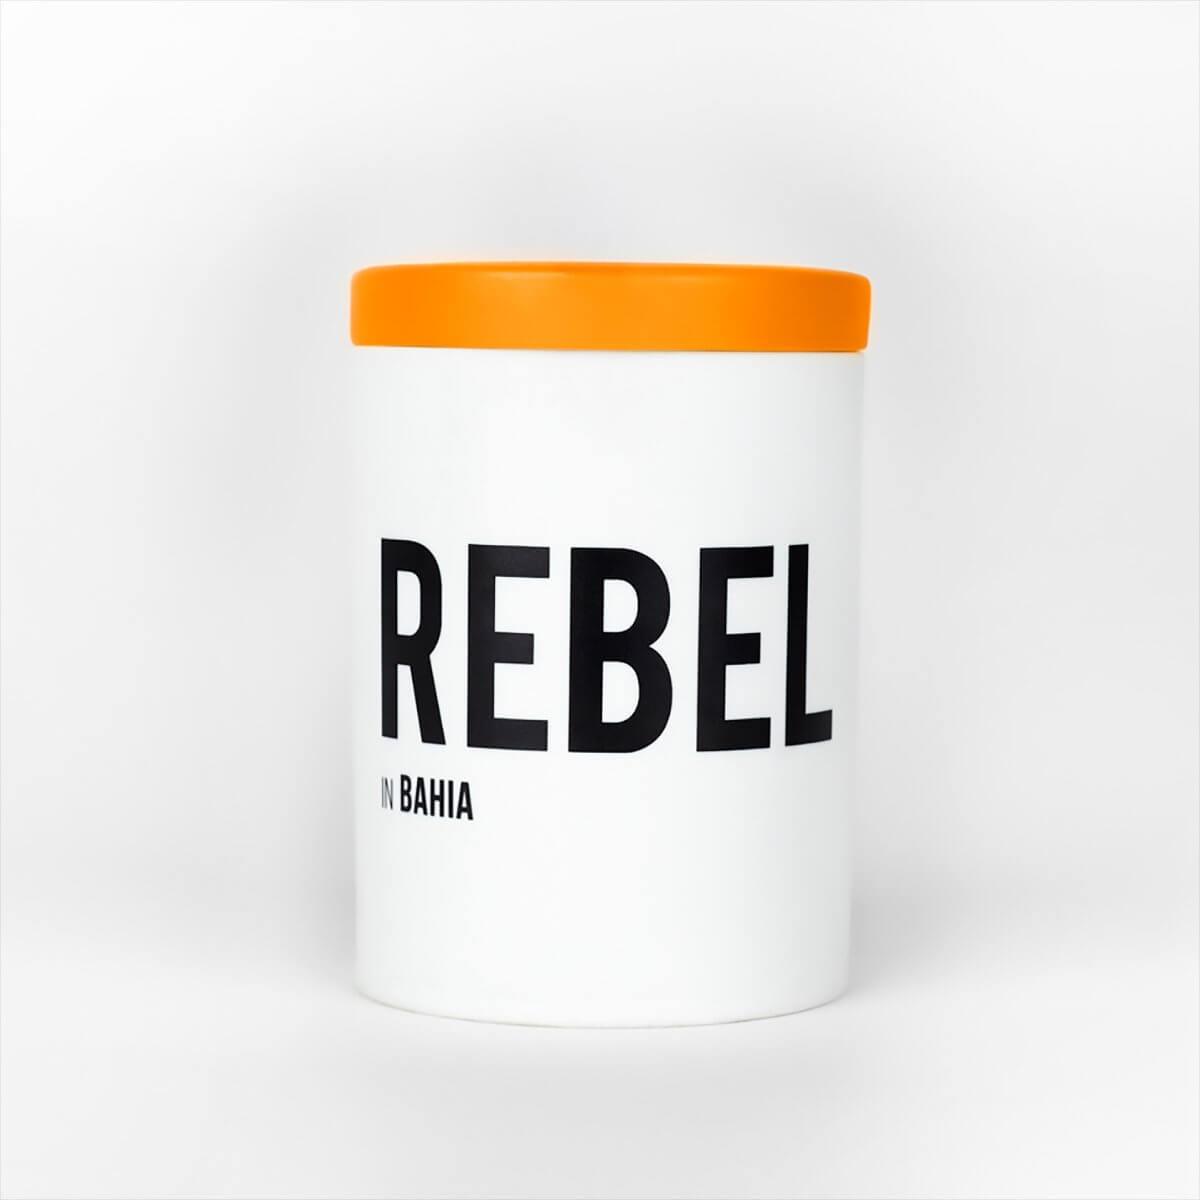 Rebel candle by Nomad Noé - Indigo Perfumery